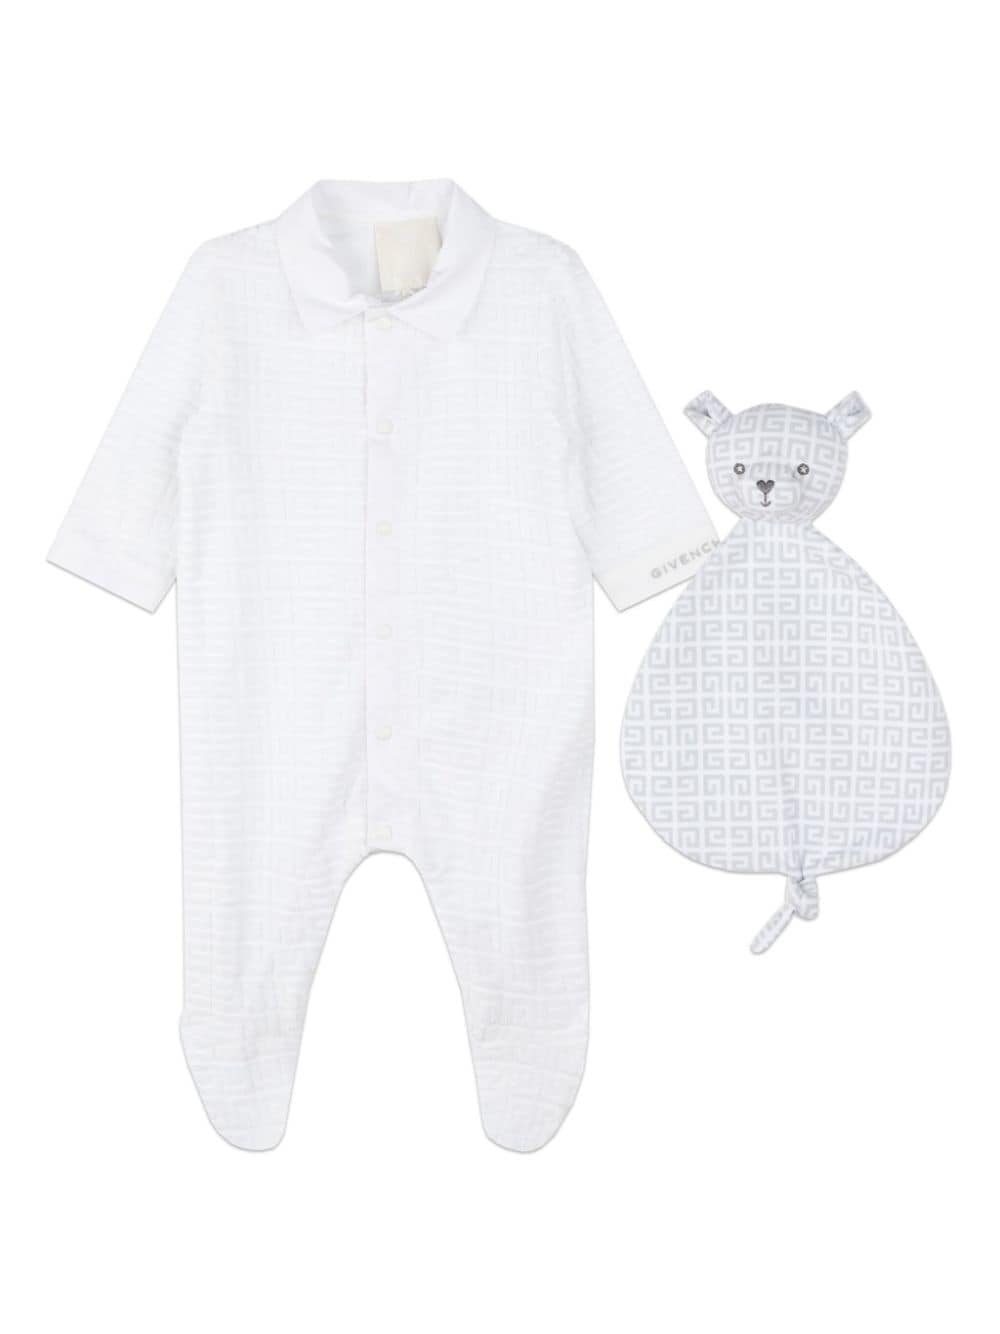 Givenchy Kids 4G cotton pajamas (set of two) - White von Givenchy Kids